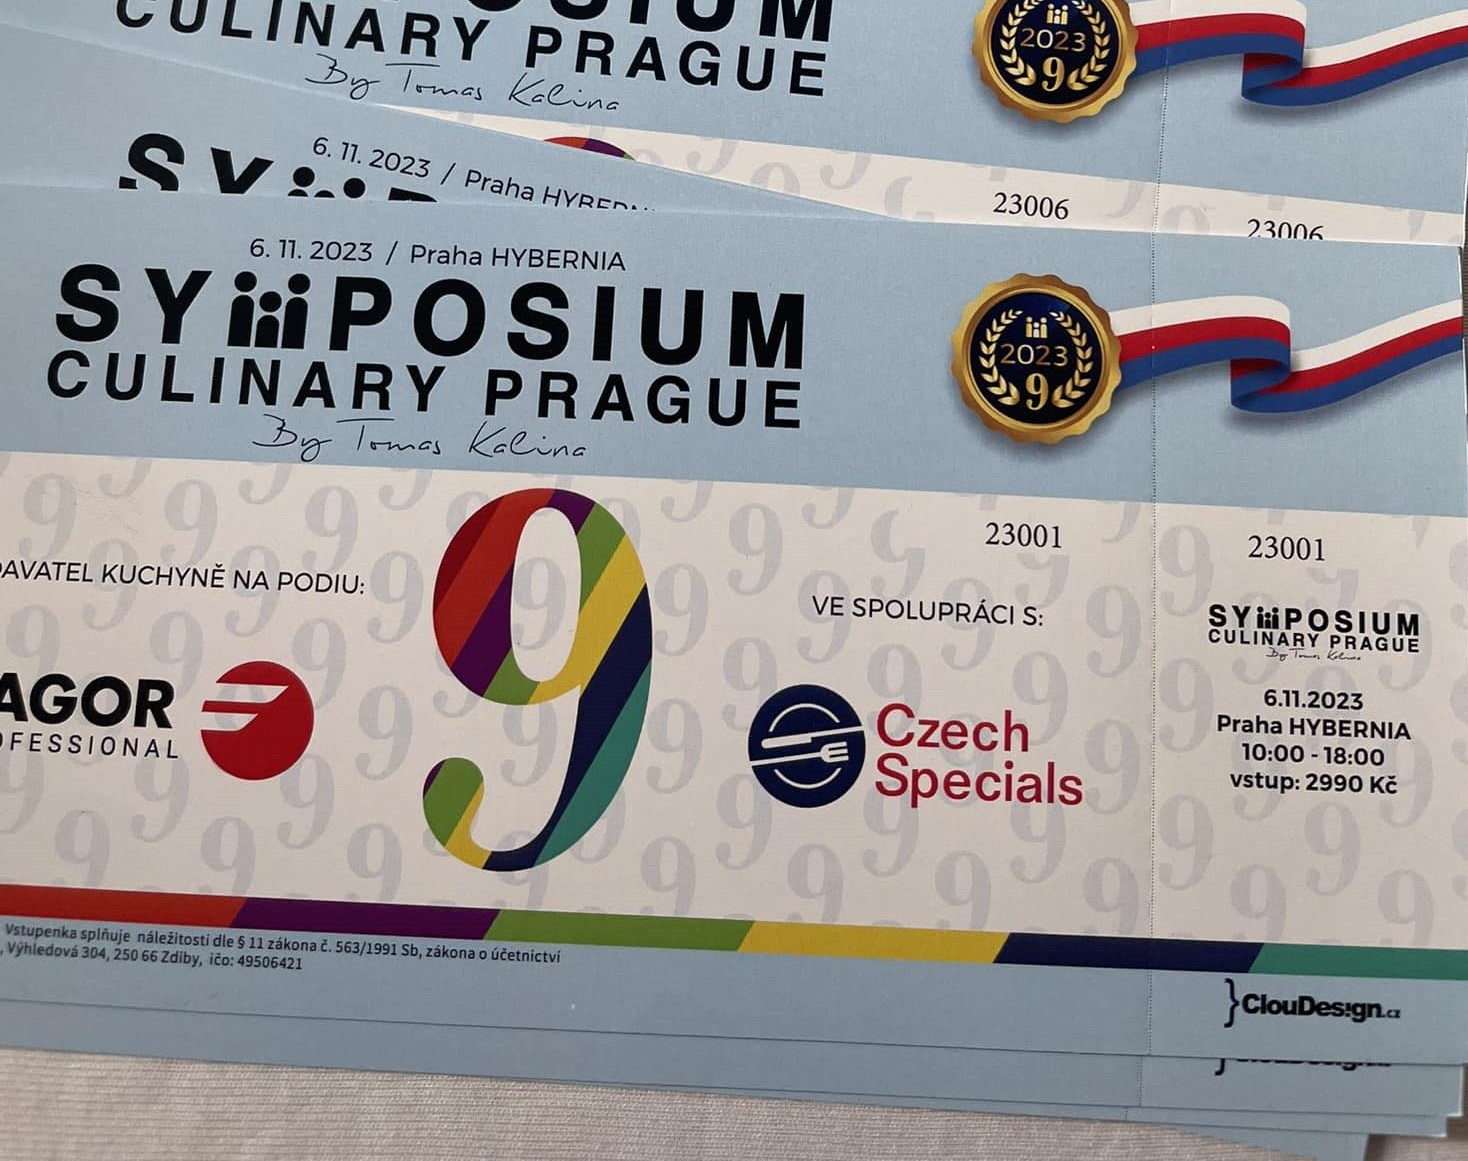 Symposium Culinary Prague 2023